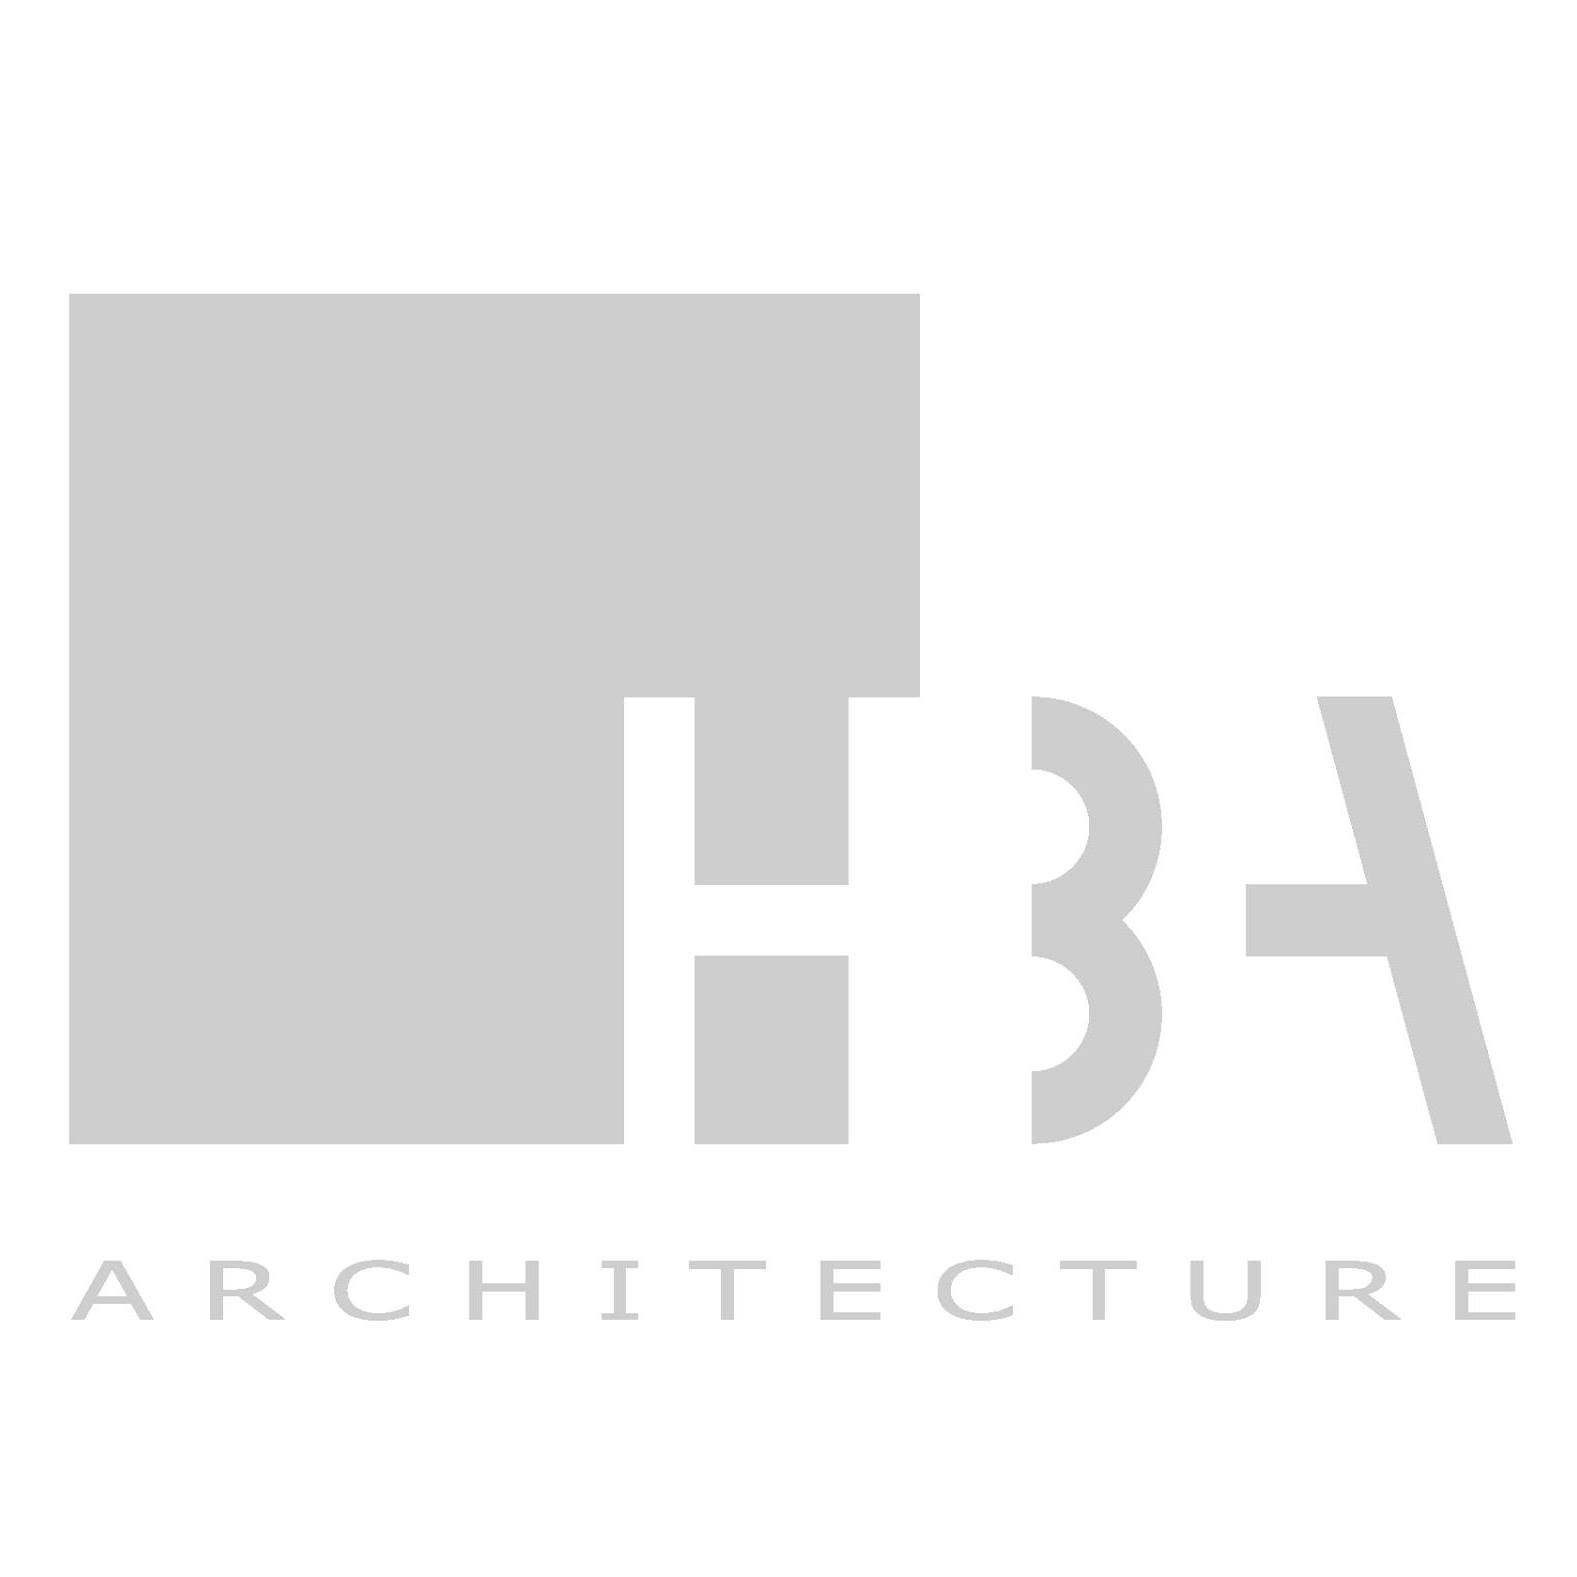 The HBA architecture